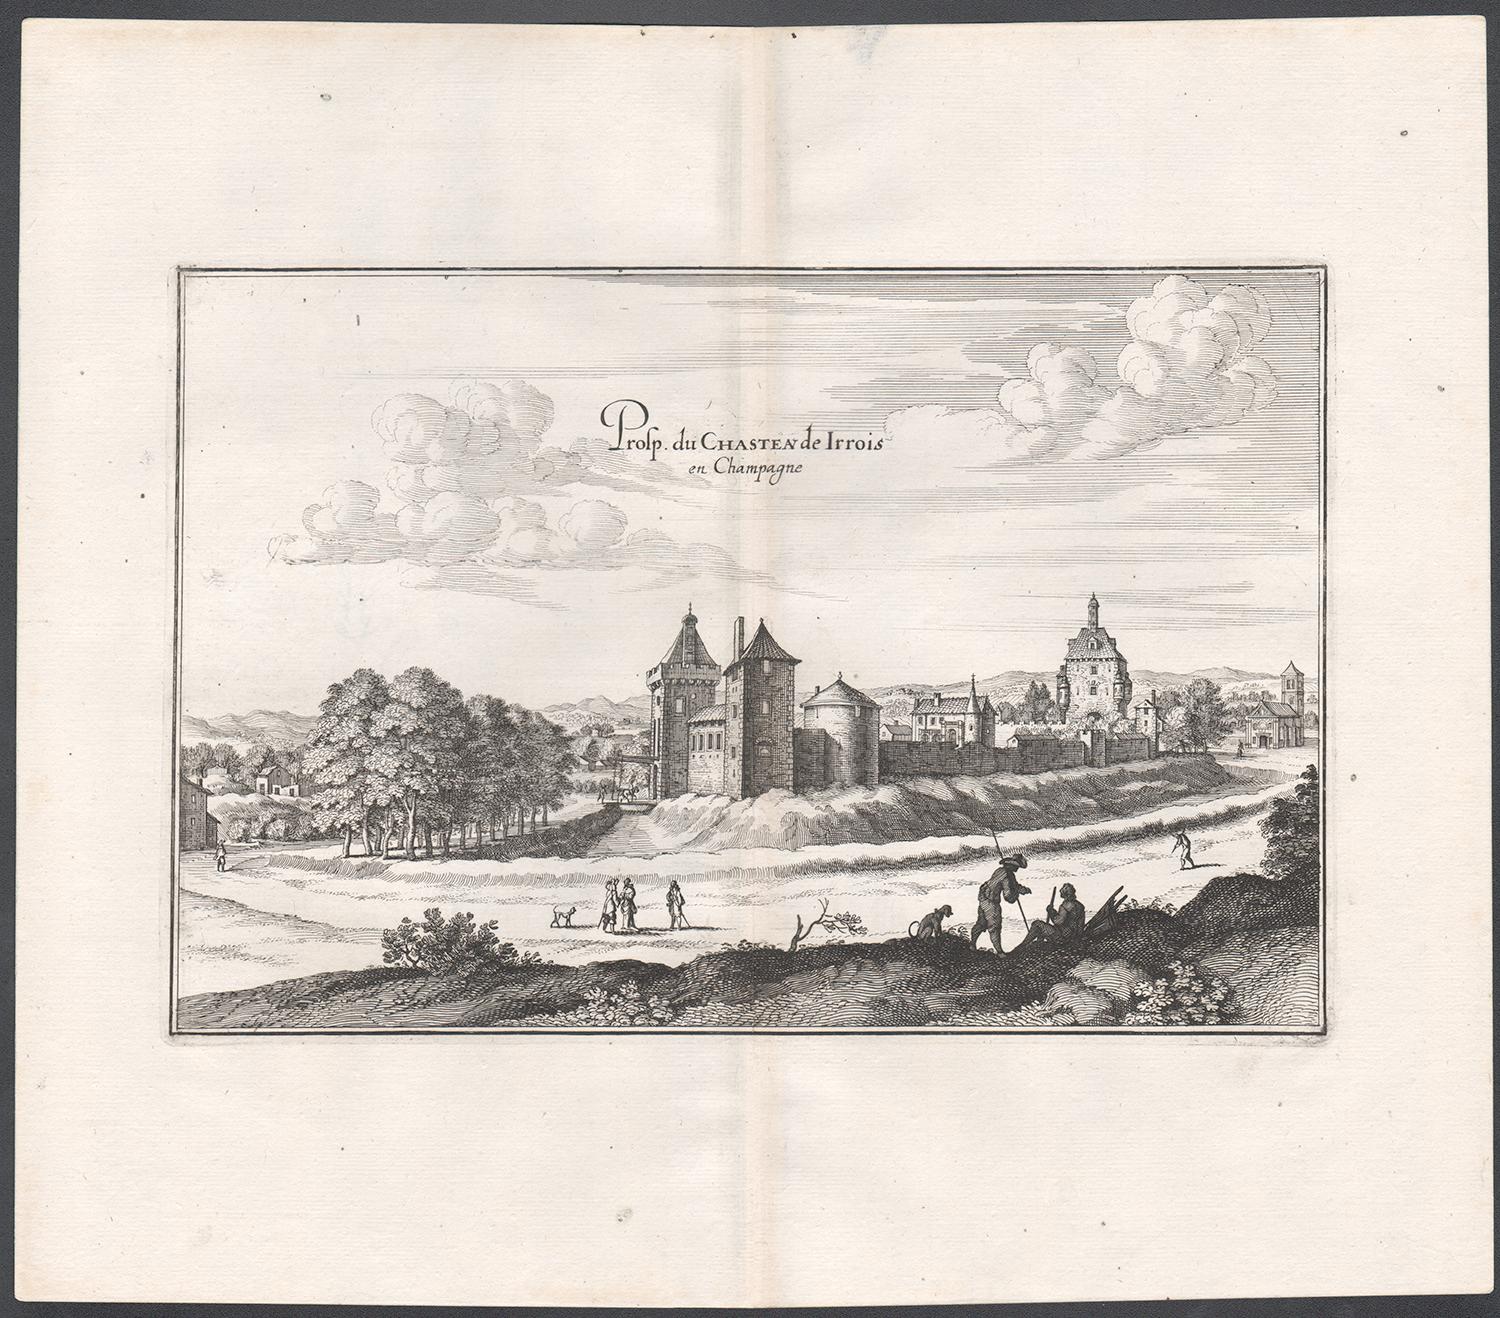 Castle of Irrois à Champagne, architecture française, gravure du milieu du XVIIe siècle - Print de Matthaeus Merian